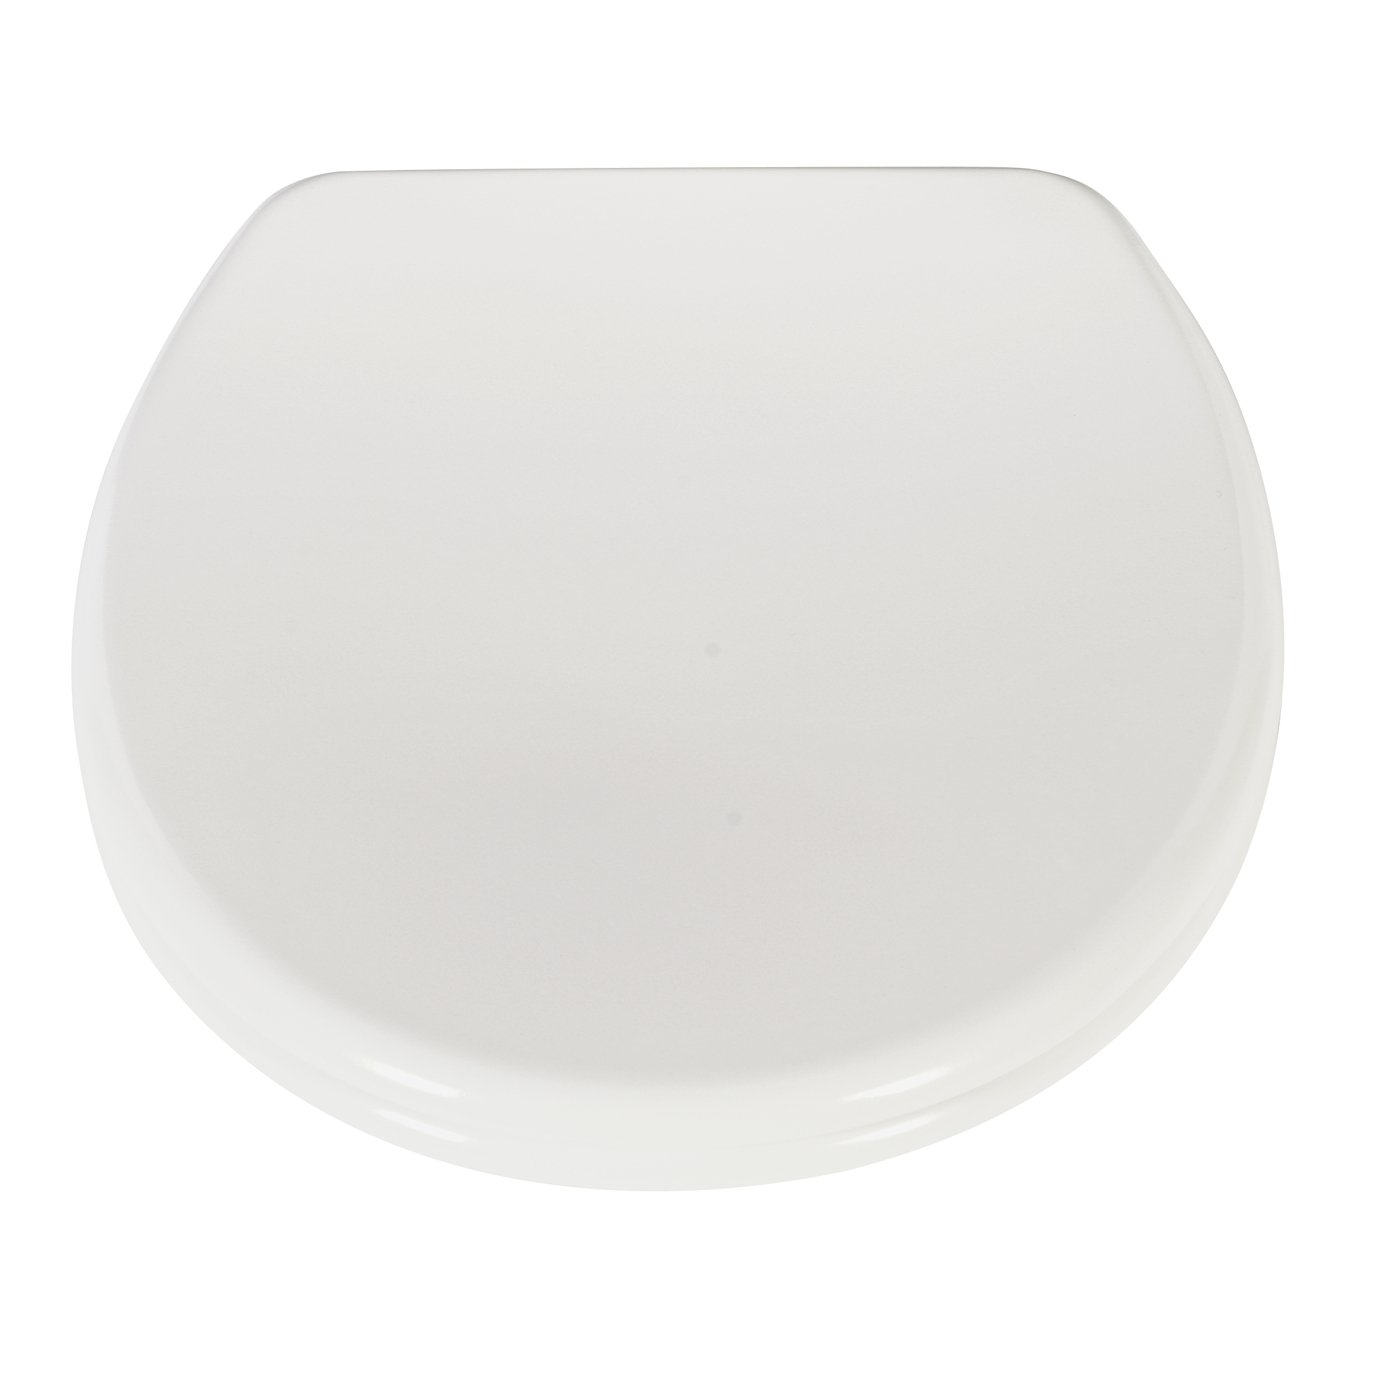 Argos Home Thermoplastic Slow Close Toilet Seat - White (8336484